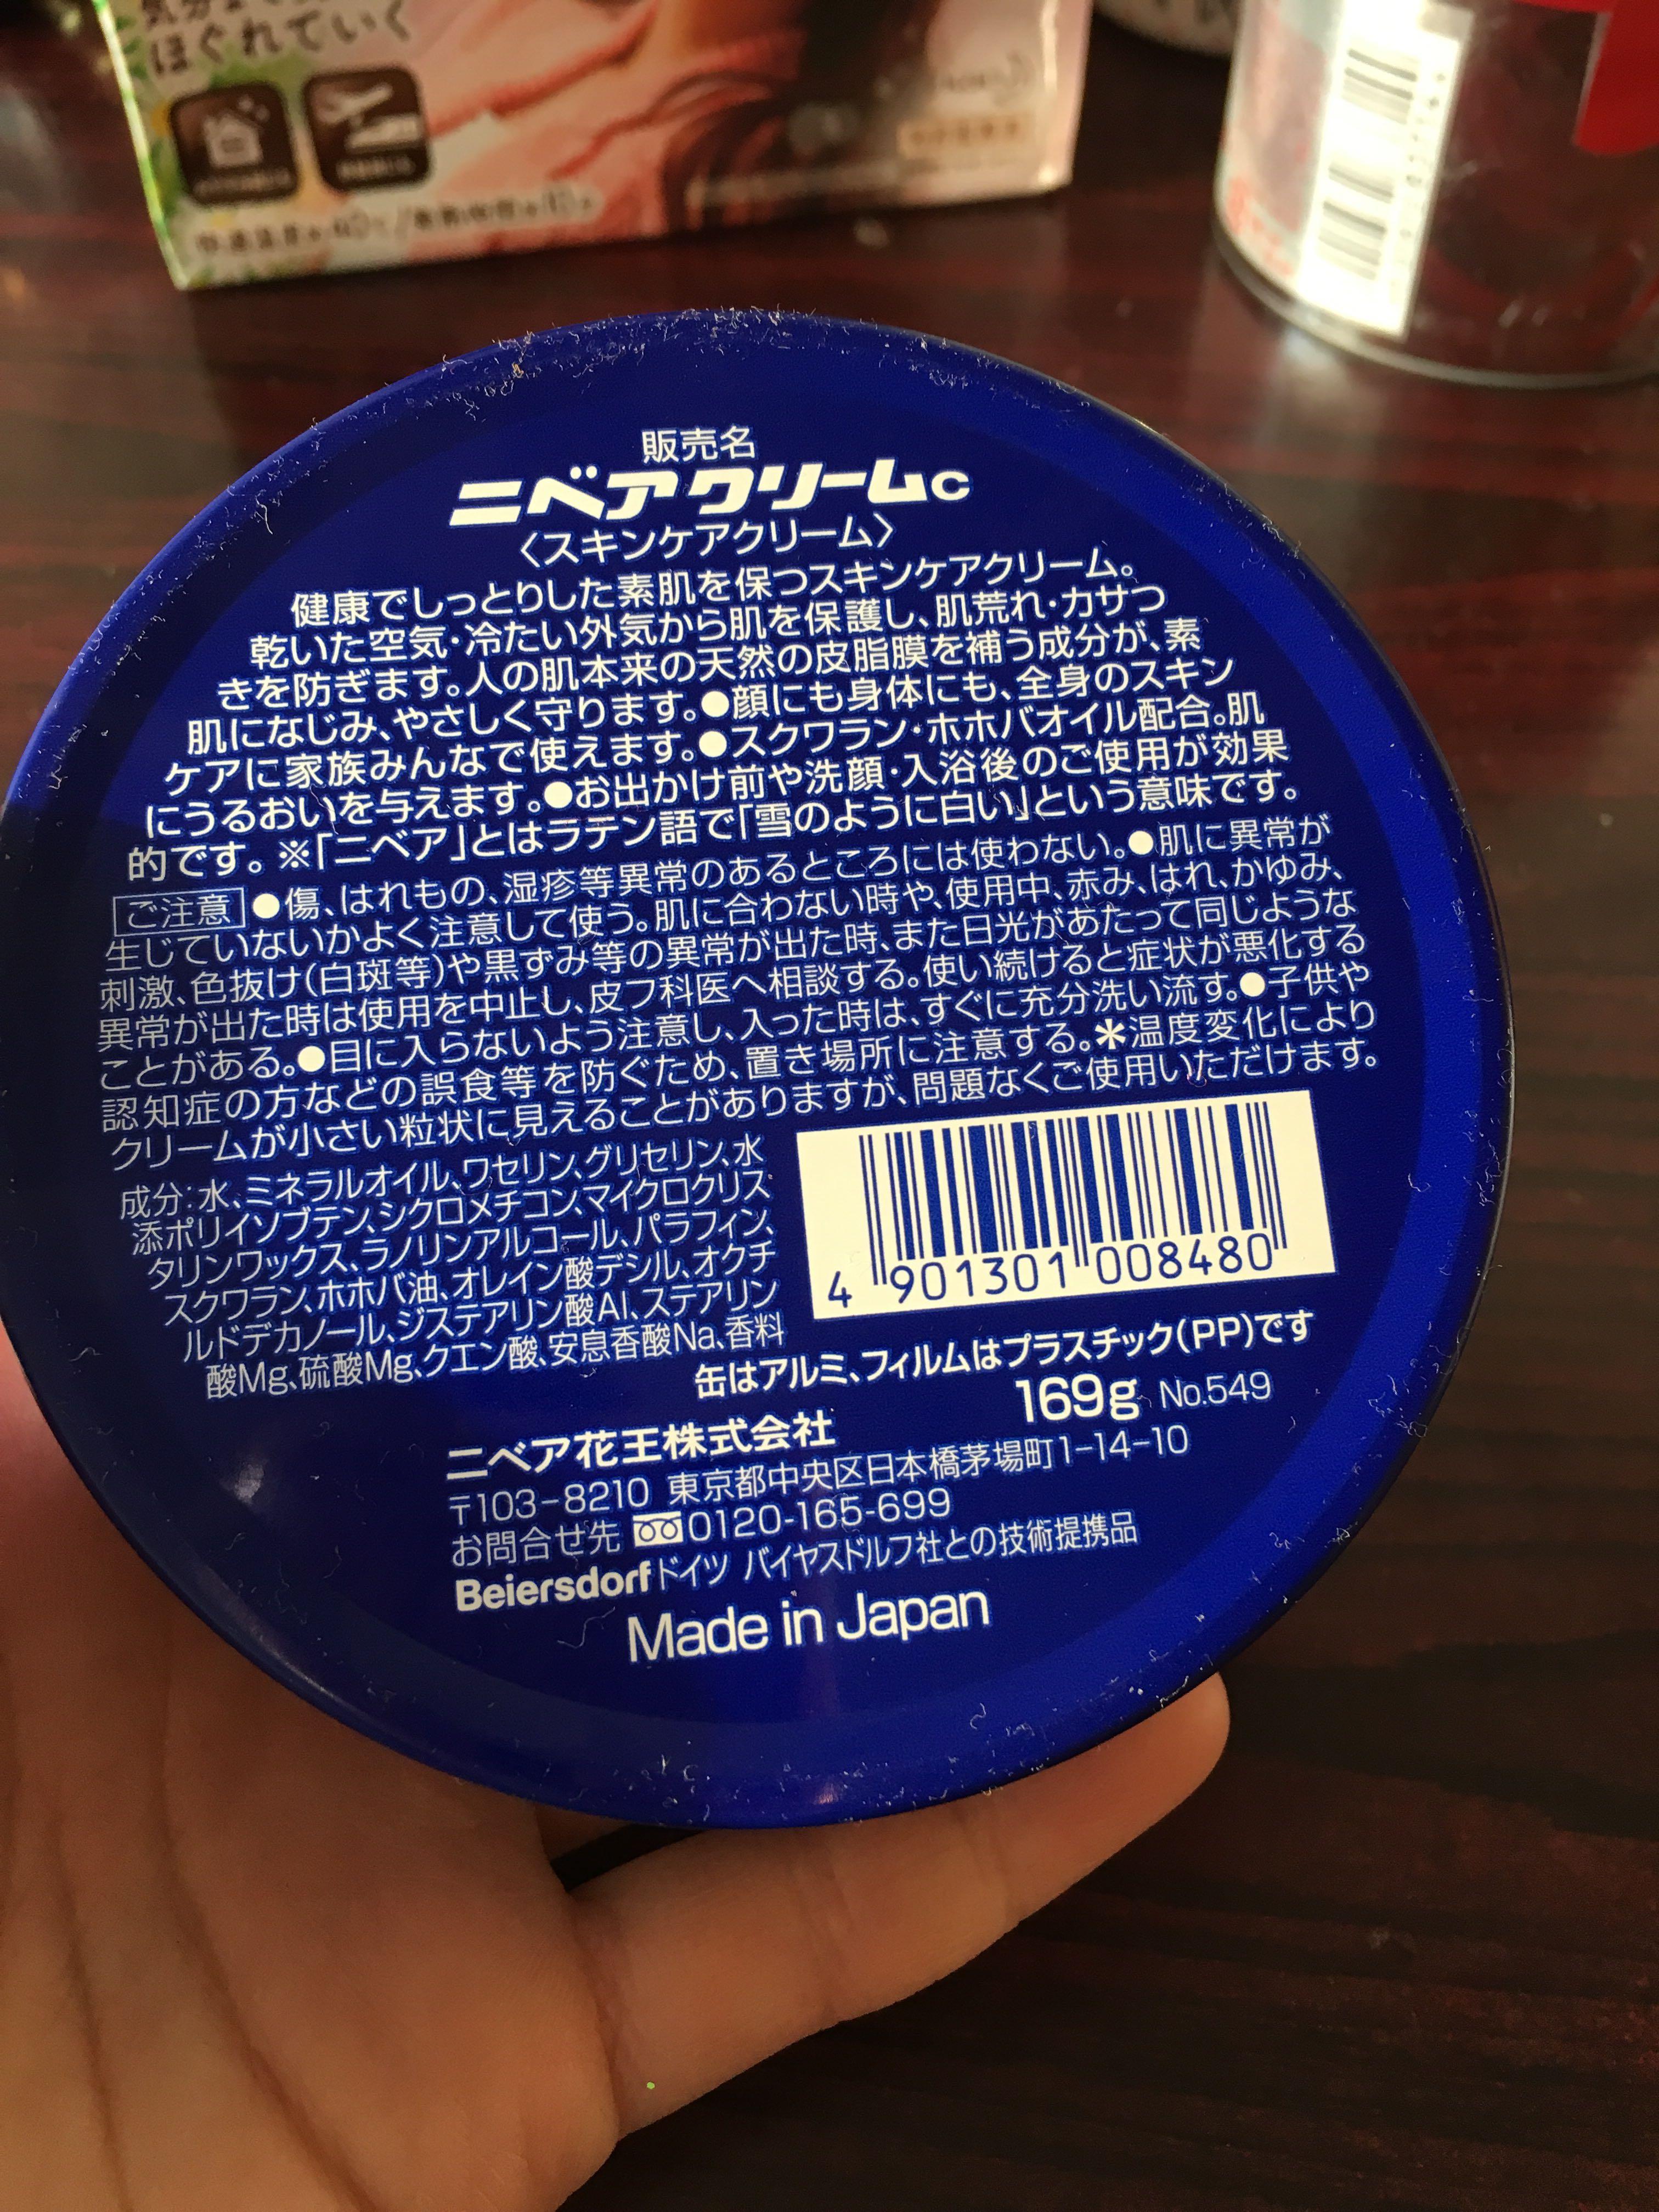 妮维雅蓝罐(面霜)怎么看生产日期?日本产?